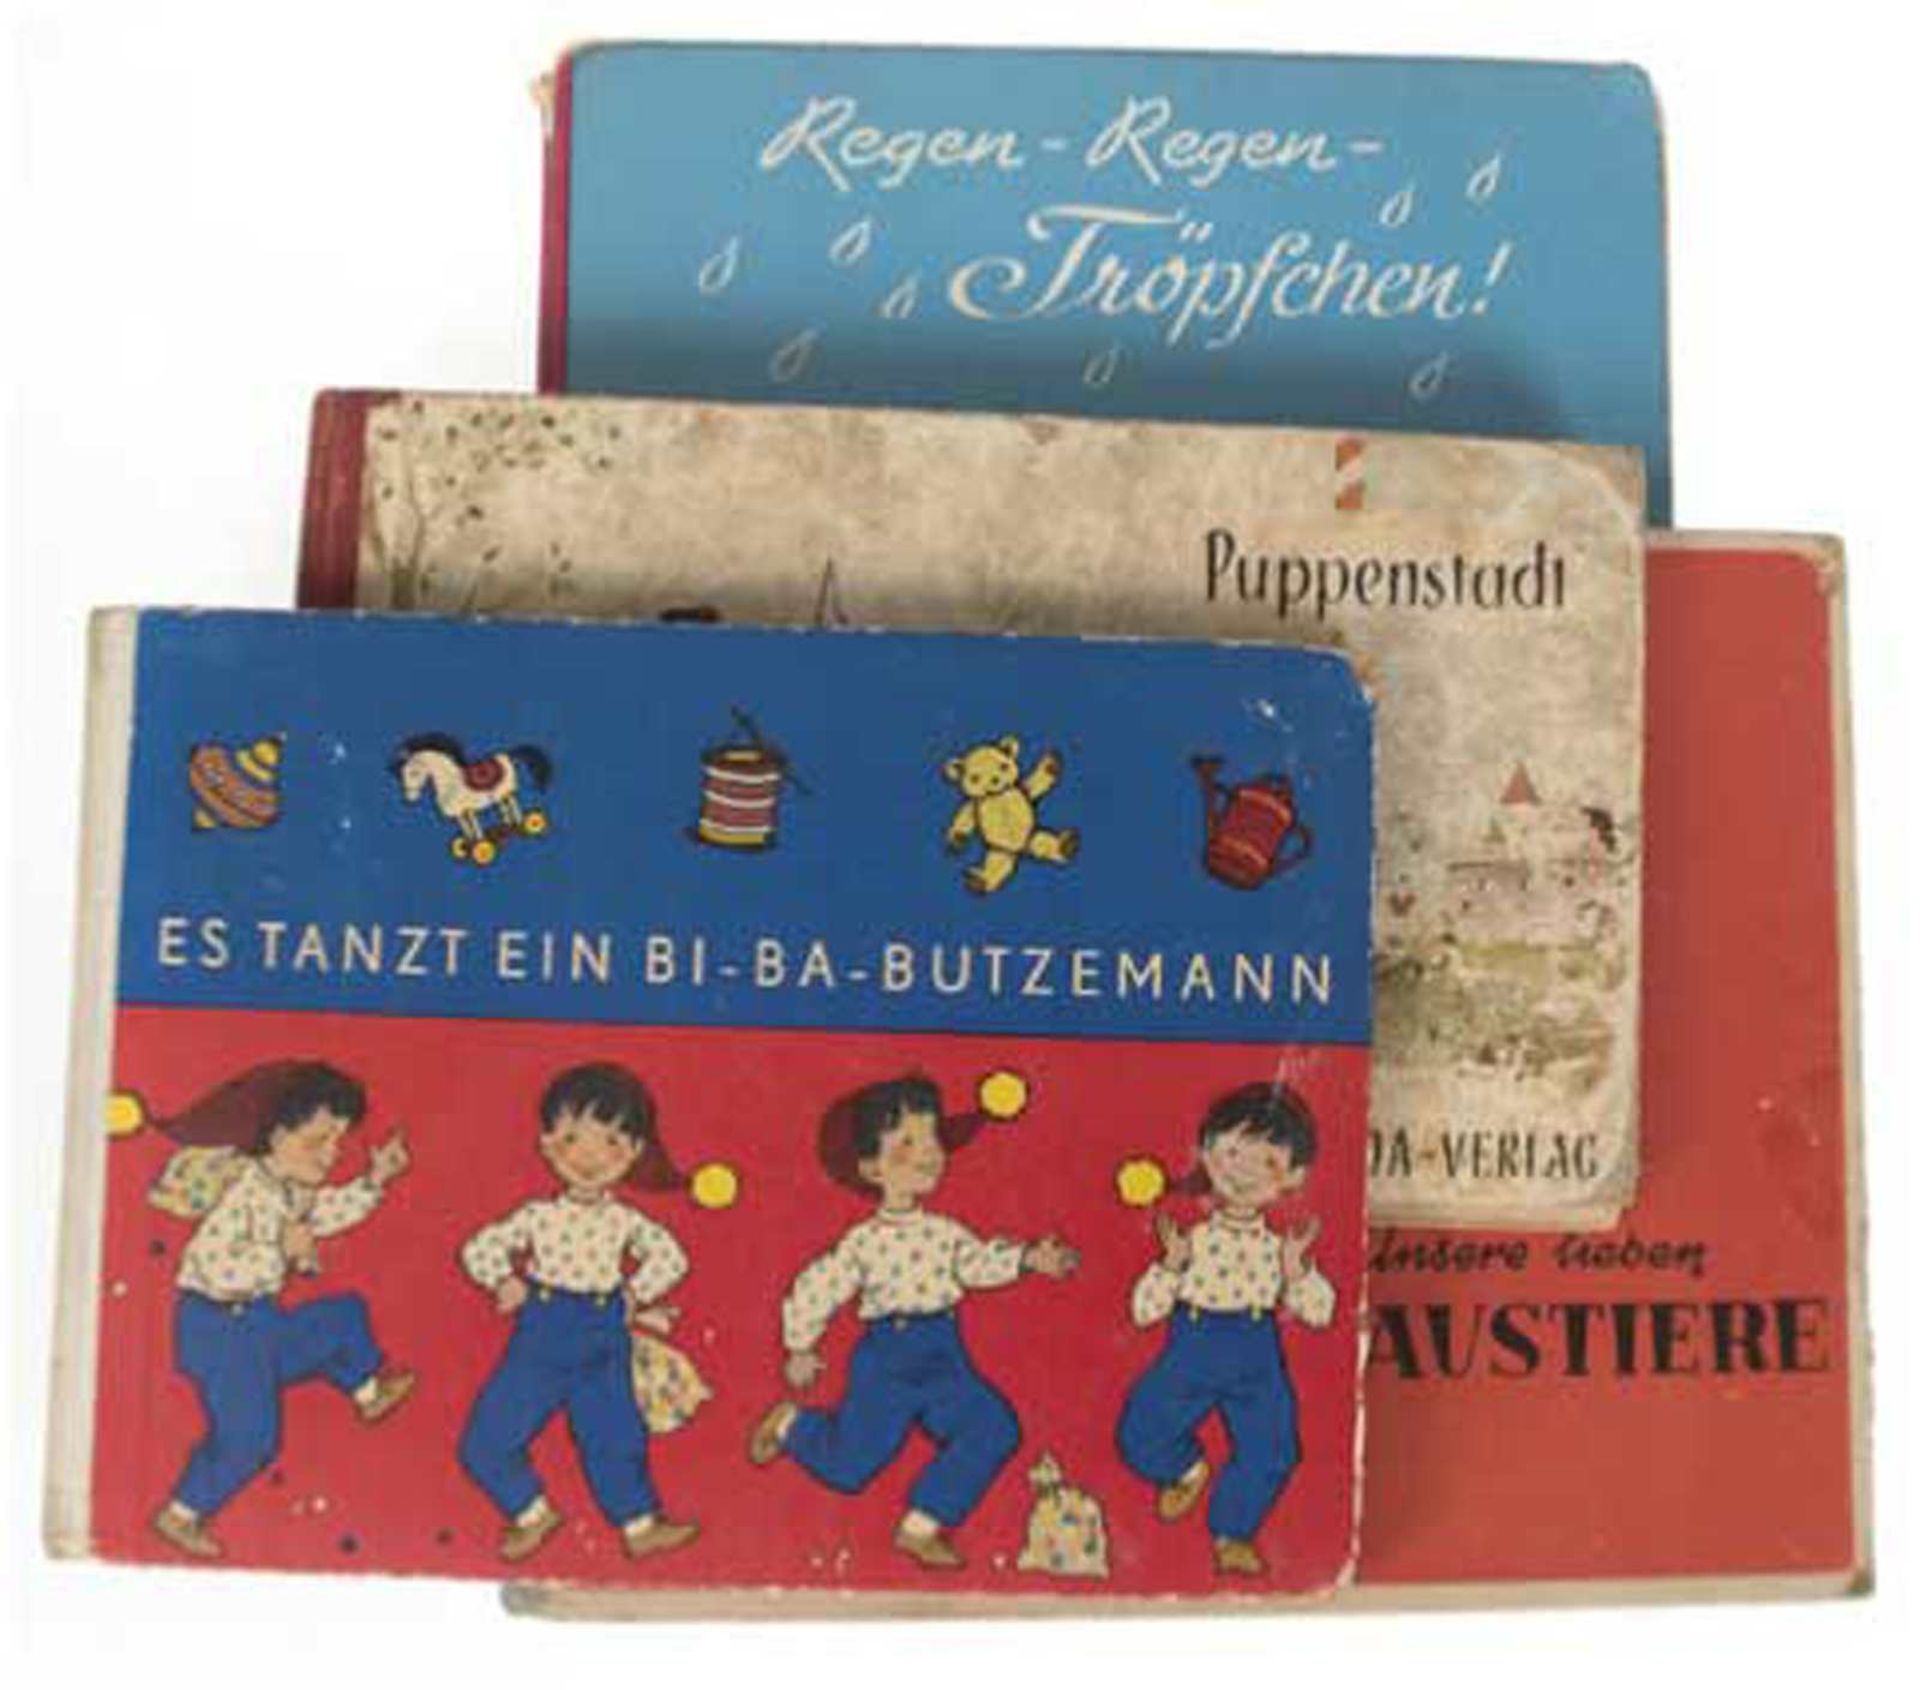 4 Kinderbücher, u.a. "Unsere lieben Haustiere", "Es tanzt ein Bi-Ba-Butzemann", ca. 60erJahr